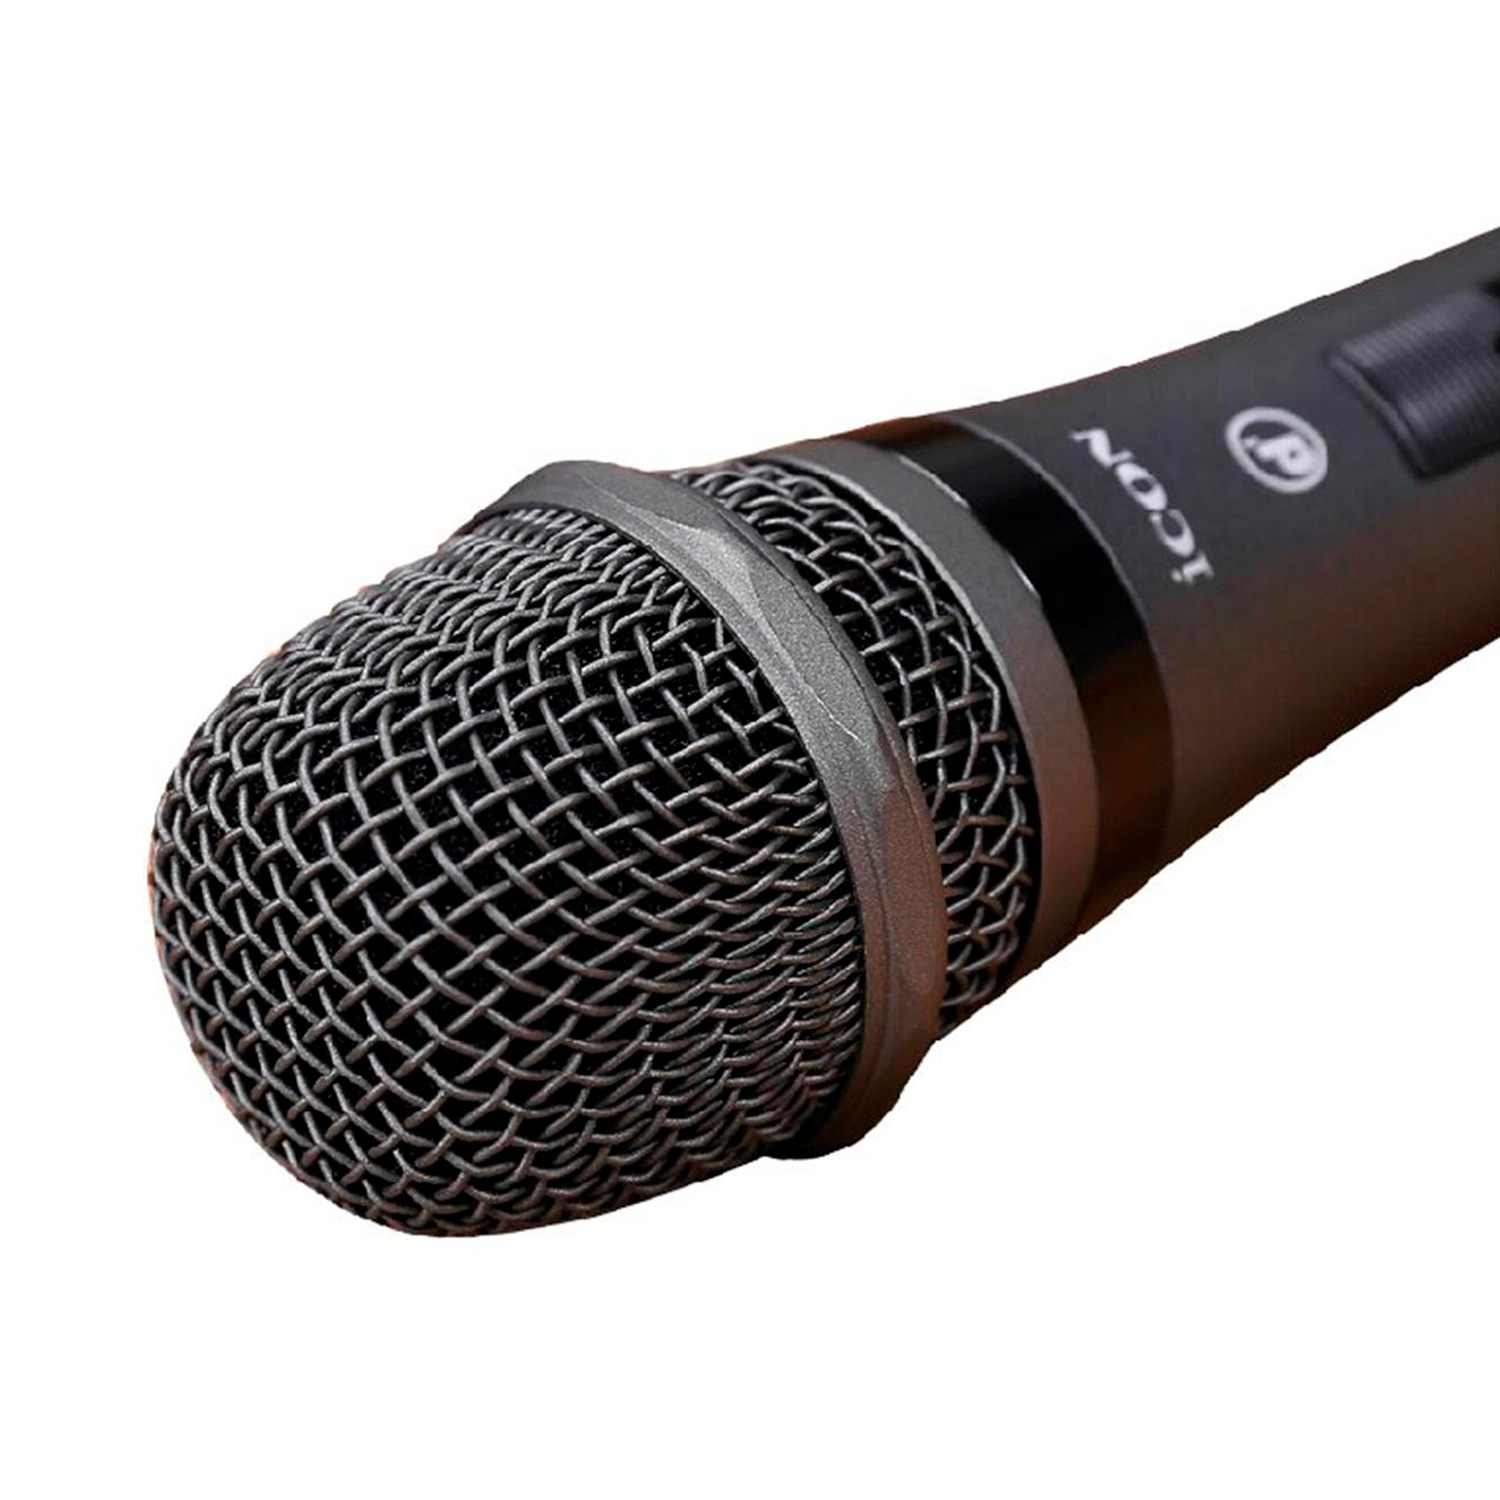 iCON D1 вокальный микрофон